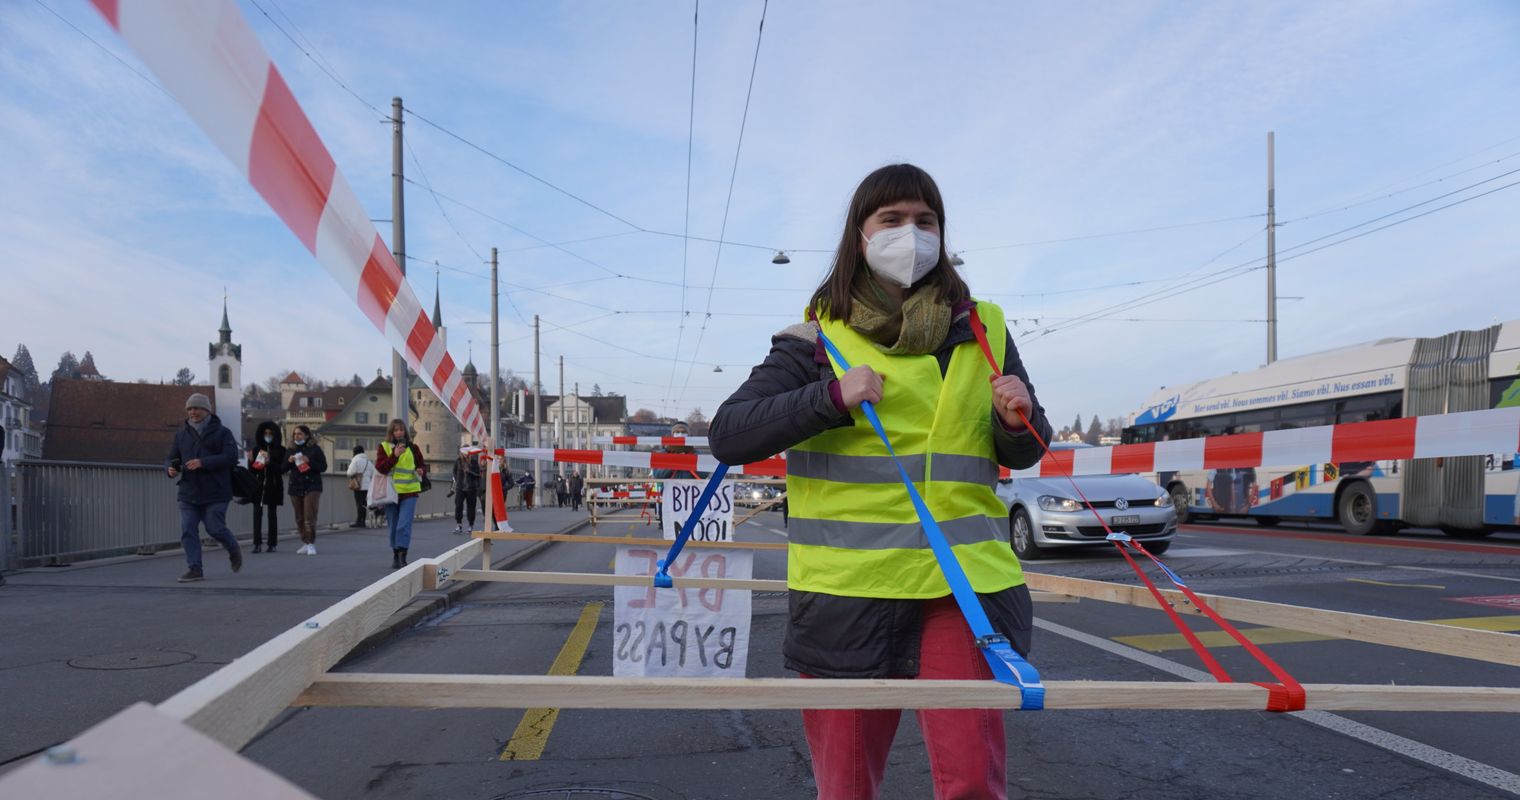 Platz da! Klimastreik-Aktion gegen Autos in der Stadt Luzern